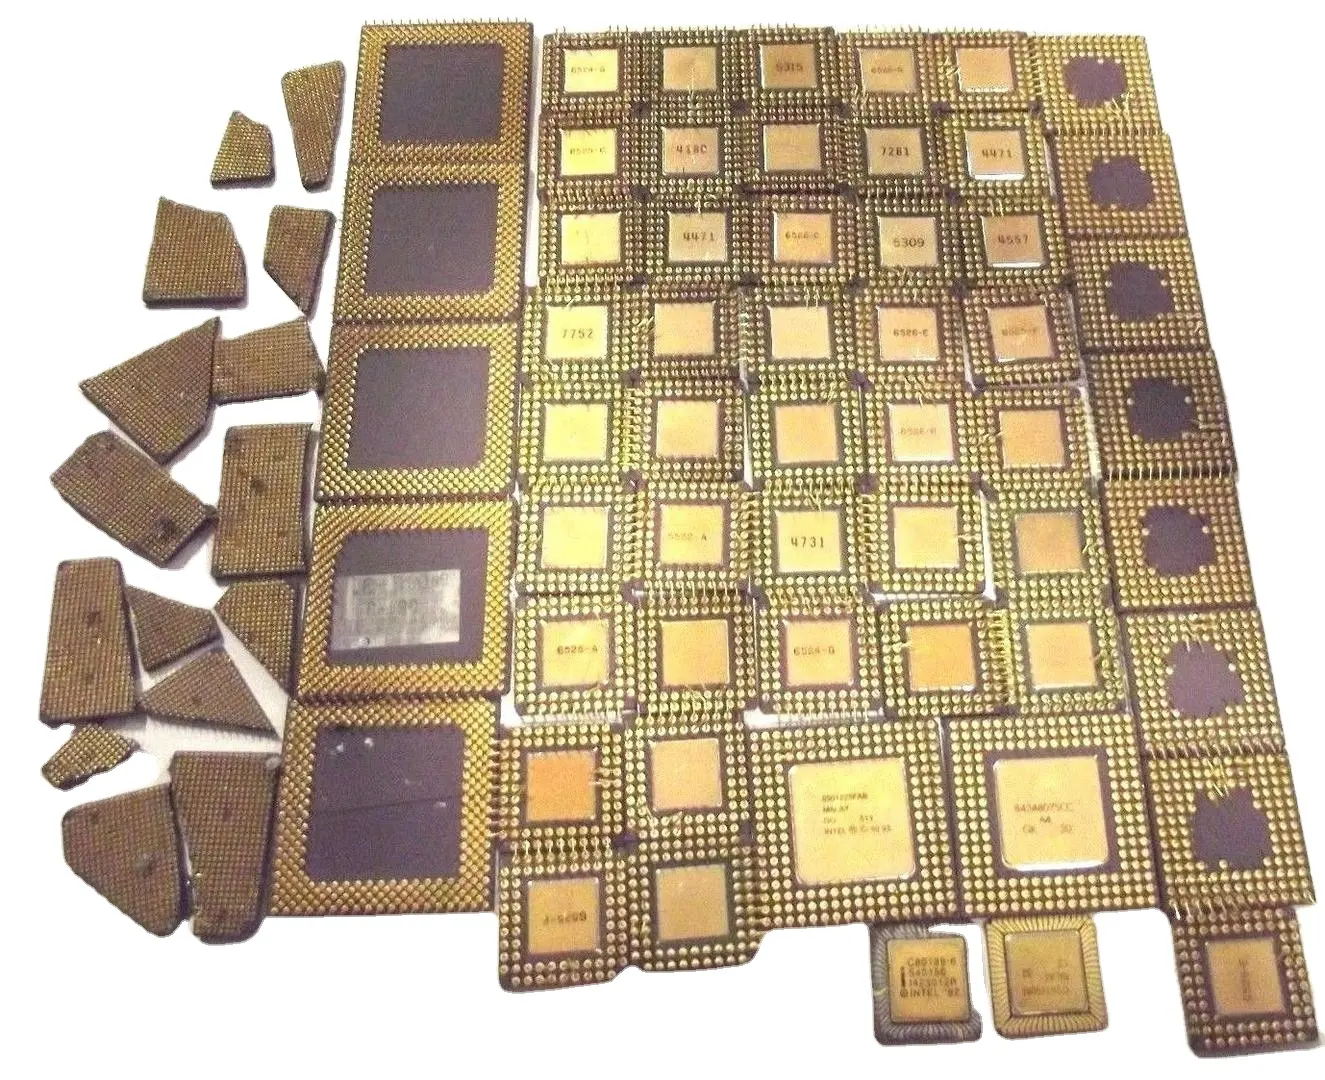 Высокопроизводительный керамический процессор для восстановления золота/керамический процессор для удаления лома/компьютеры